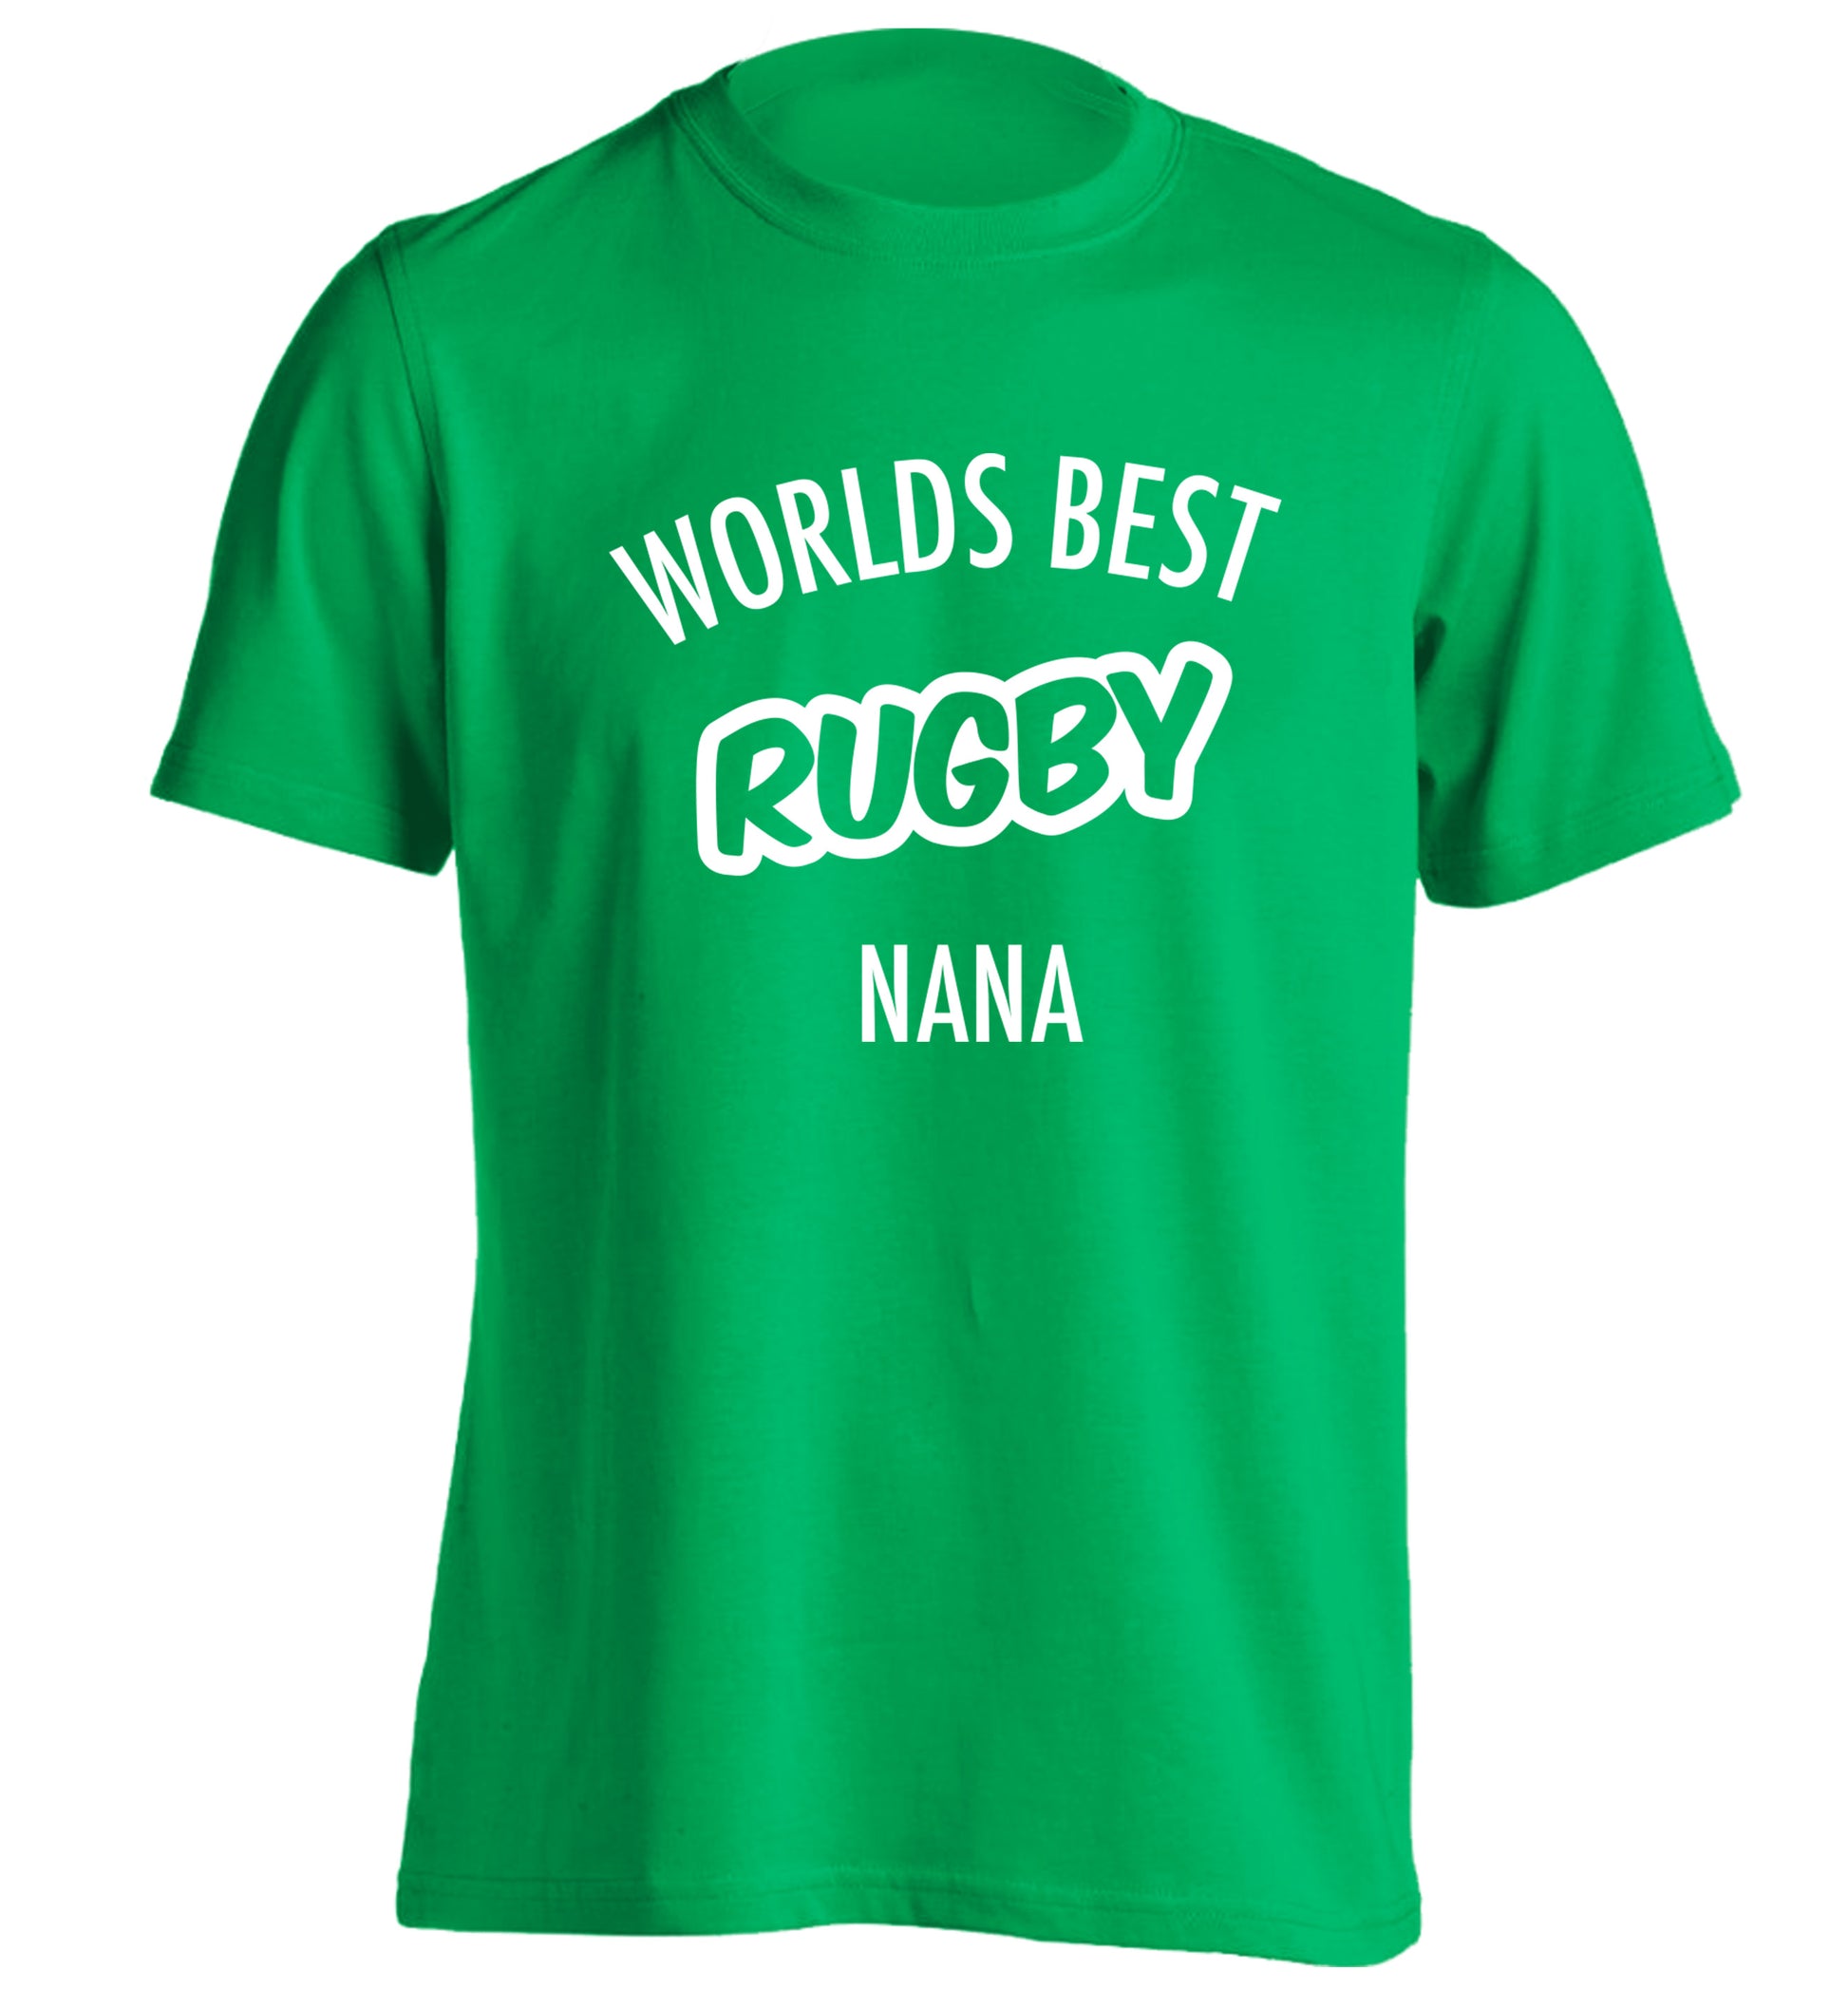 Worlds Best Rugby Grandma adults unisex green Tshirt 2XL